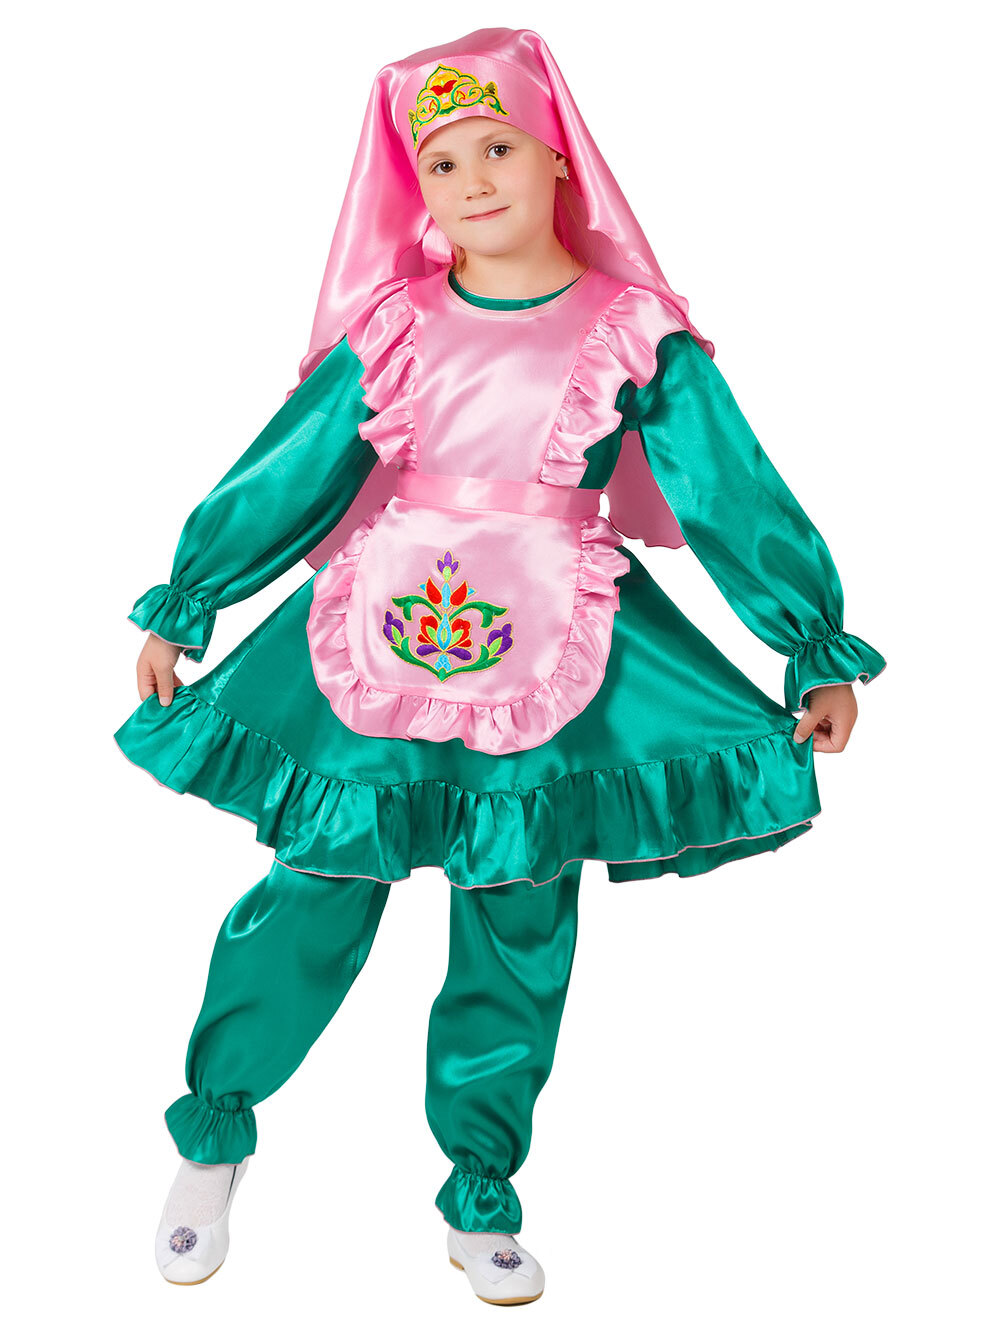 Татарский национальный костюм для девочки